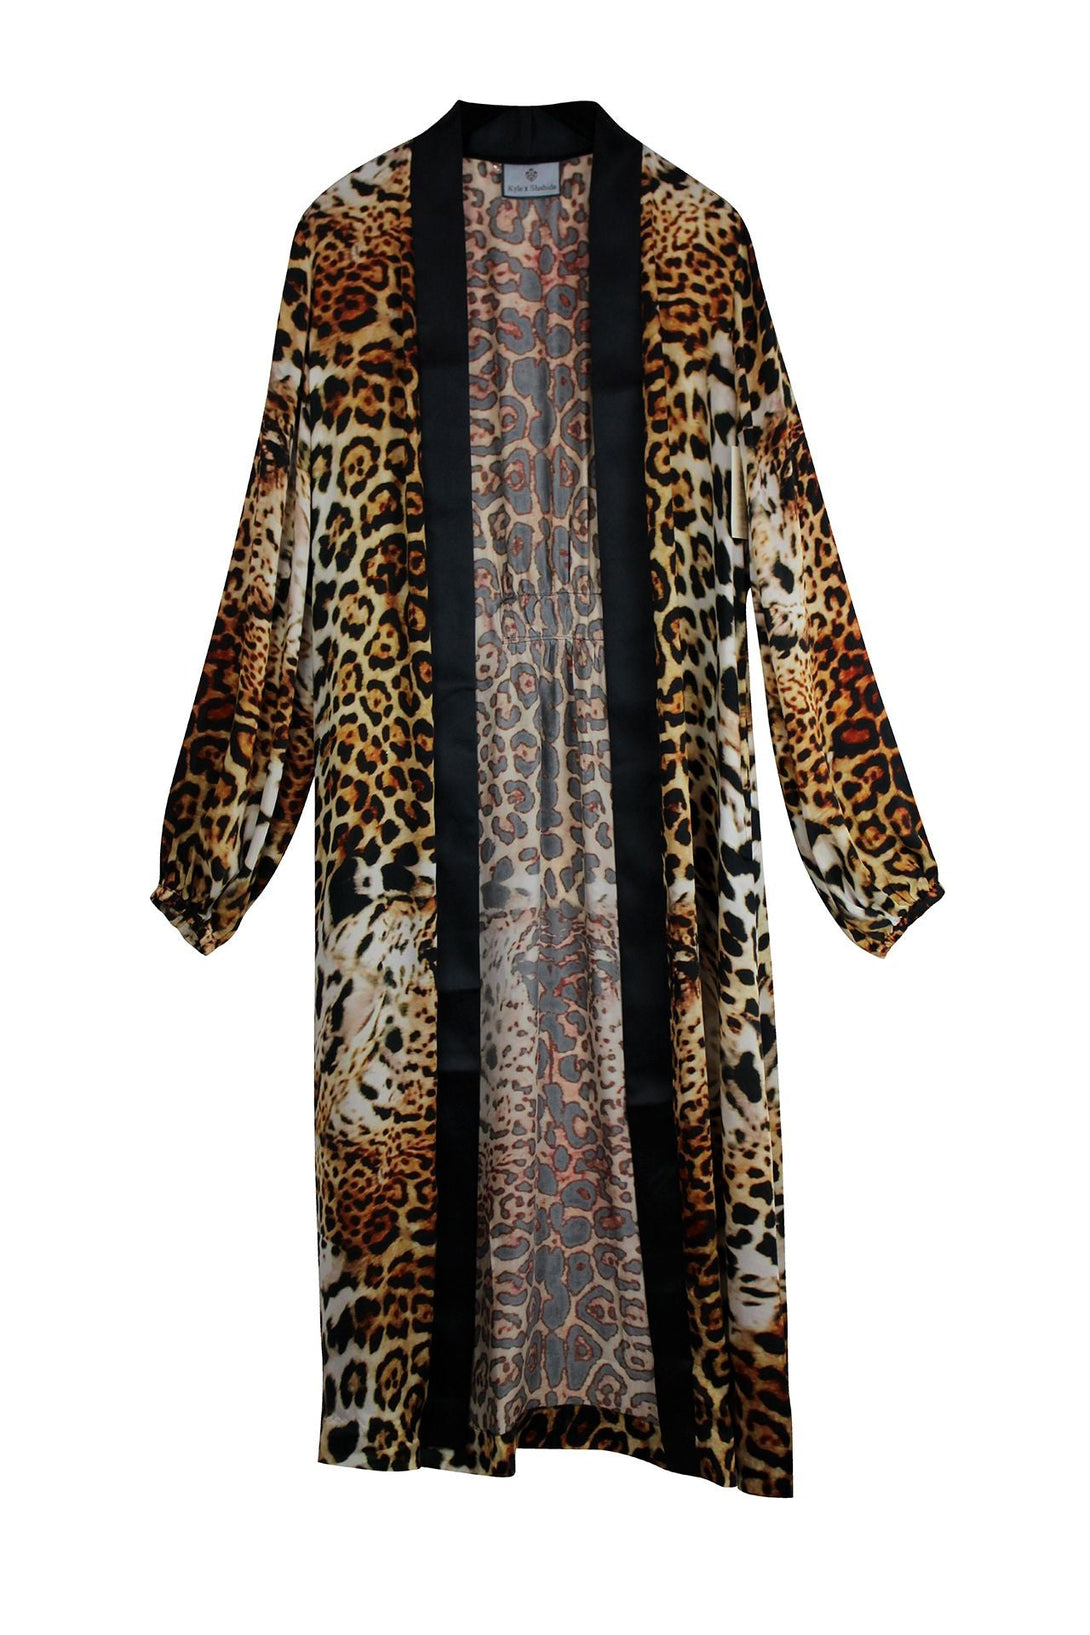 "Shahida Parides" "silk kimono robes for women" "luxury kimono" "printed silk robe" "silk leopard robe" 